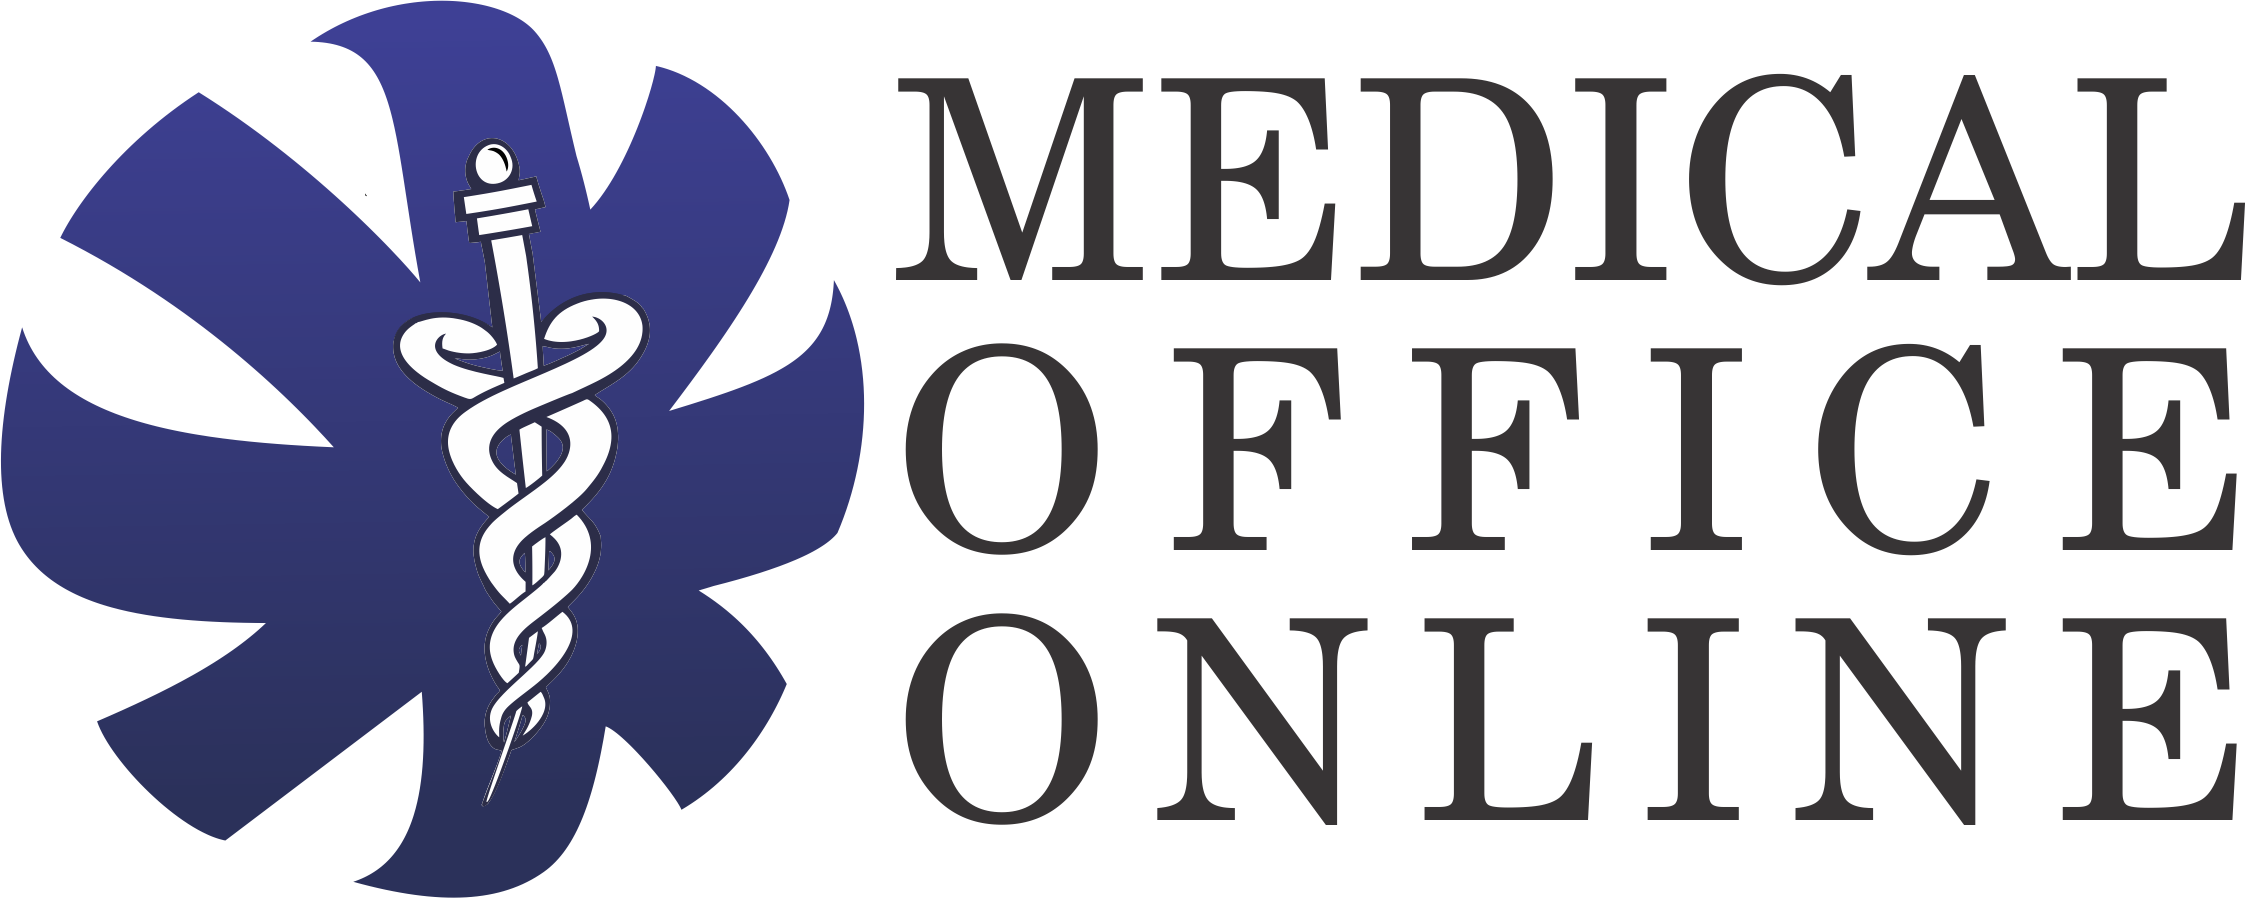 Medical Office Online